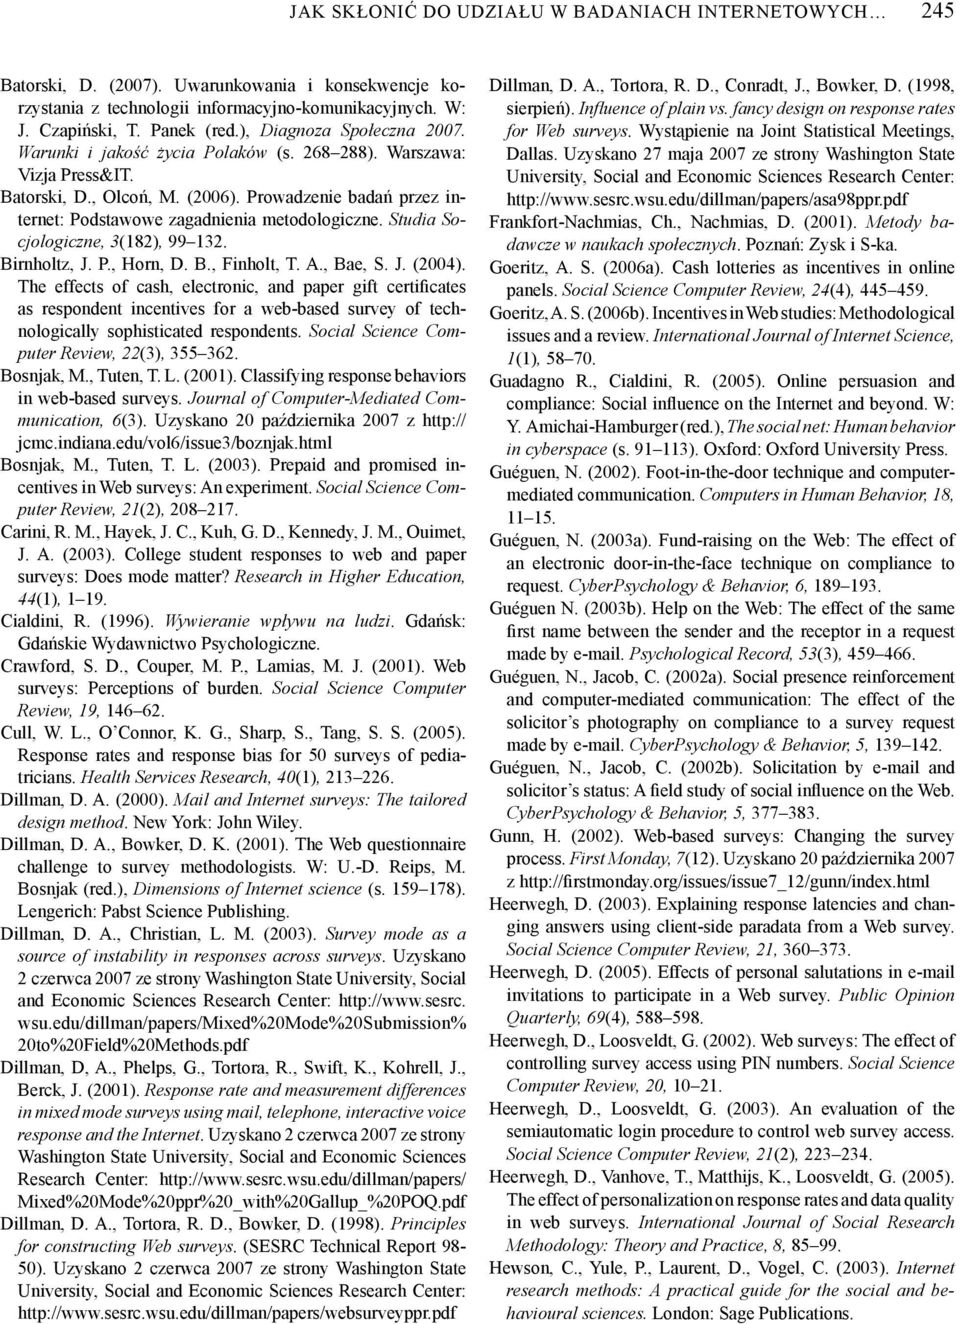 Prowadzenie badań przez in - ternet: Podstawowe zagadnienia metodologiczne. Studia So - cjologiczne, 3(182), 99 132. Birnholtz, J. P., Horn, D. B., Finholt, T. A., Bae, S. J. (2004).